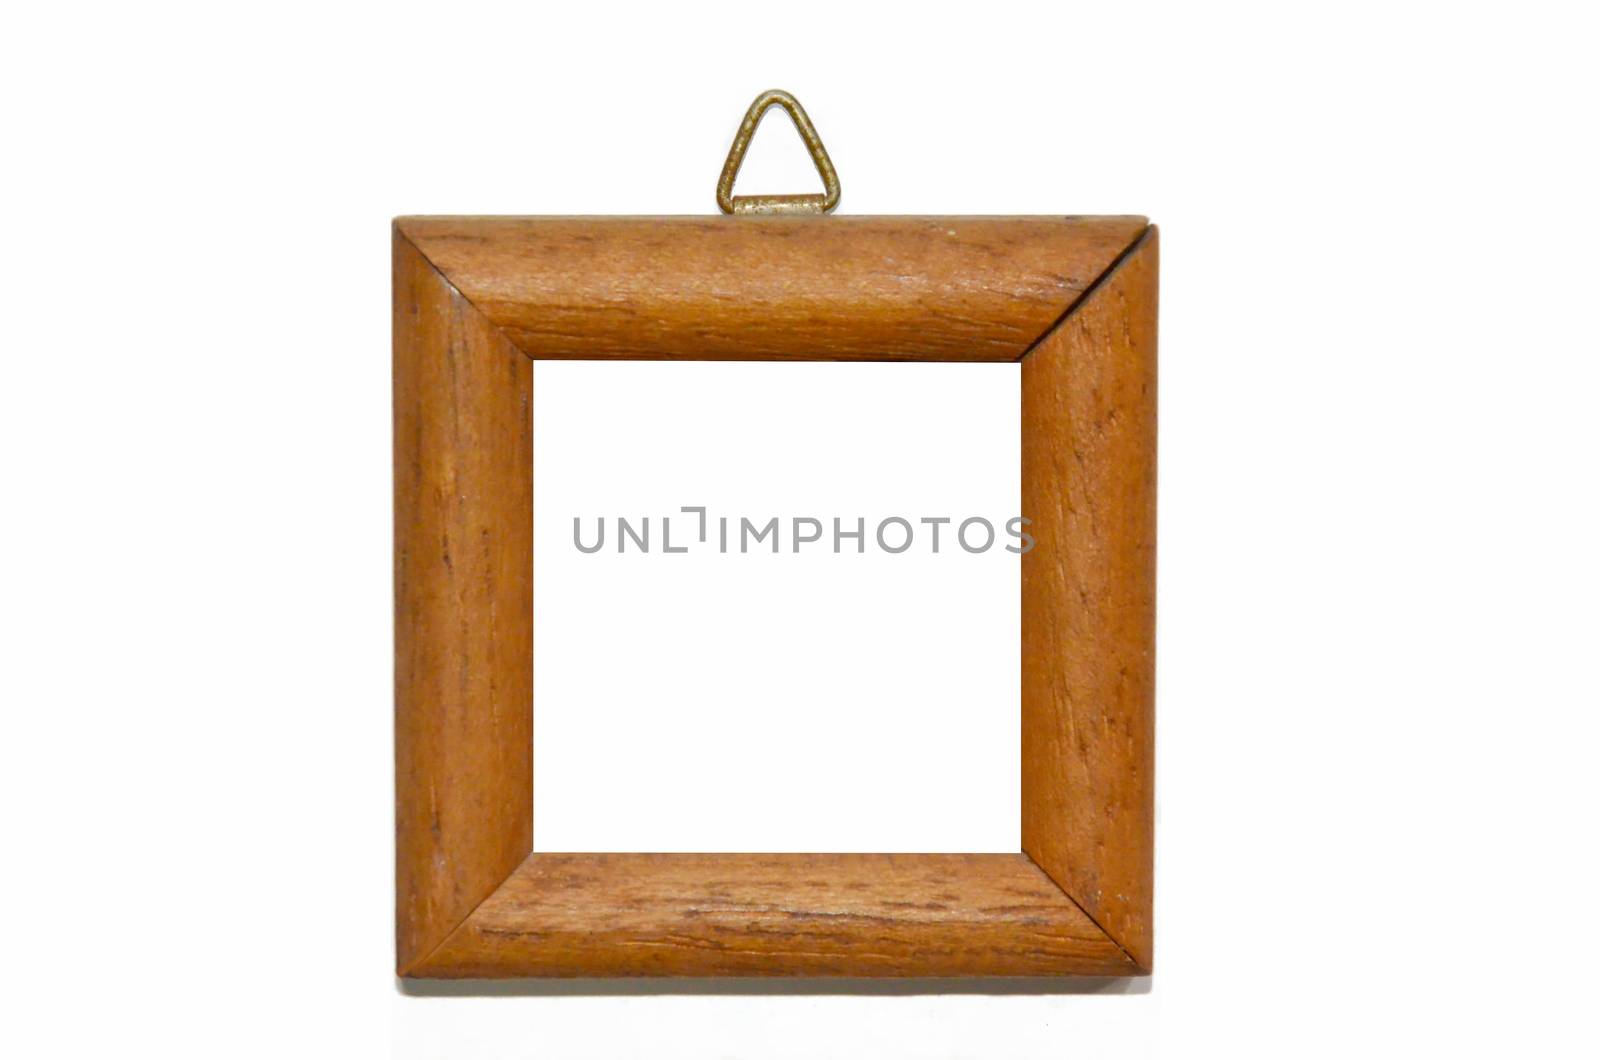 a wooden frame